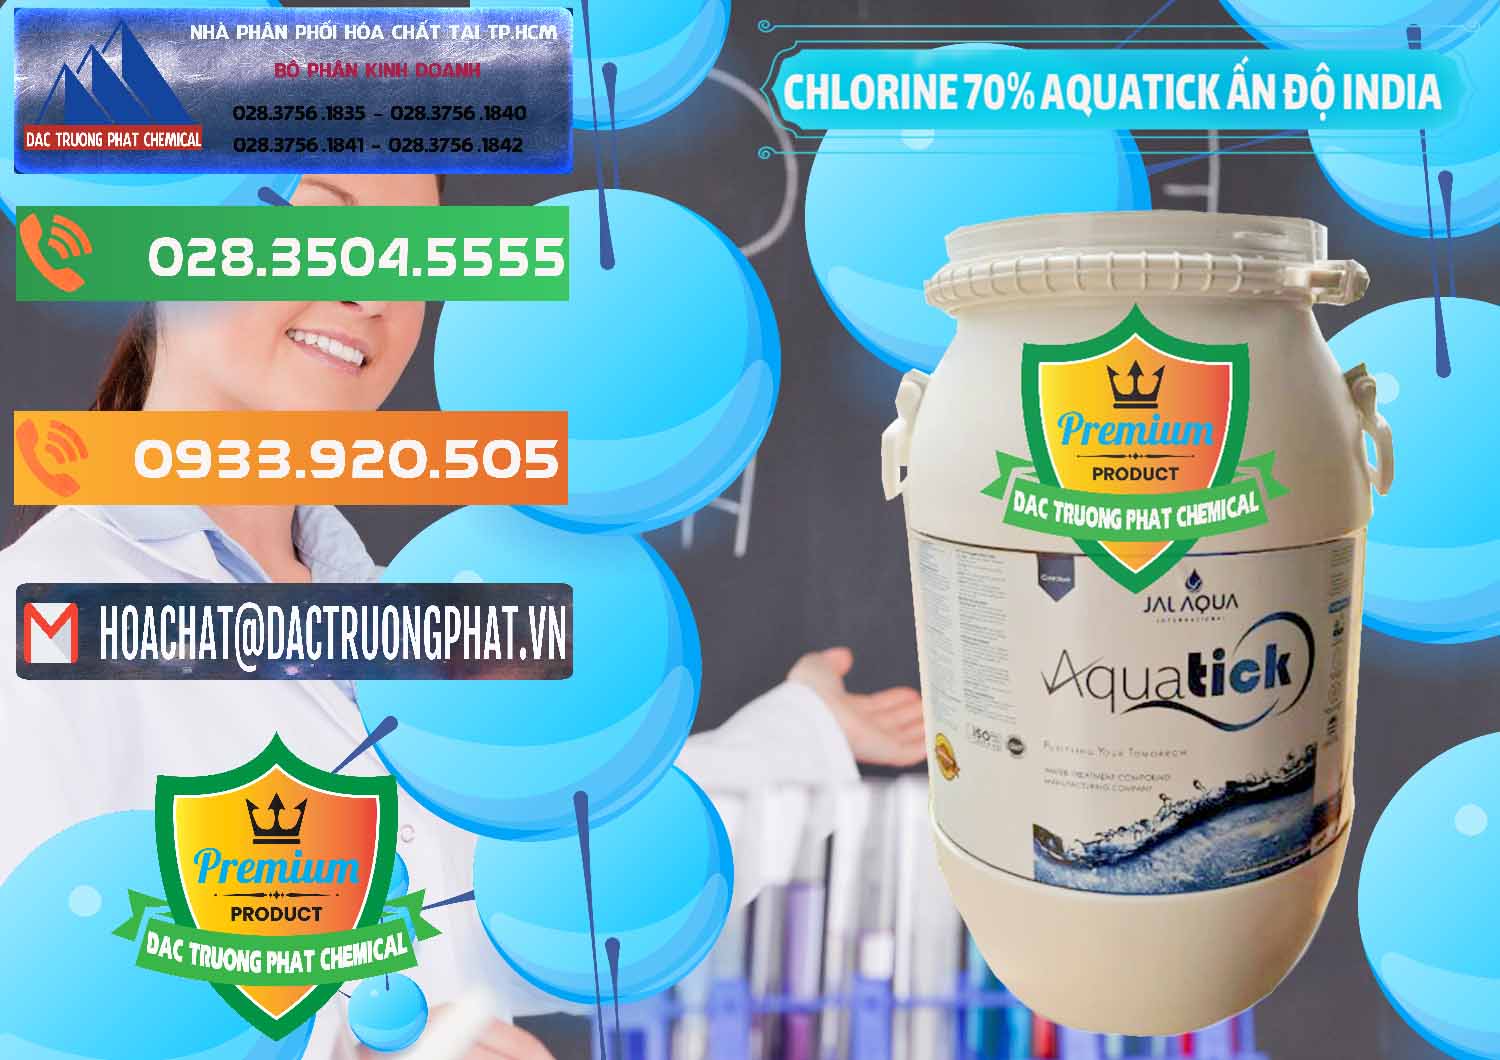 Công ty nhập khẩu và bán Chlorine – Clorin 70% Aquatick Jal Aqua Ấn Độ India - 0215 - Đơn vị kinh doanh ( phân phối ) hóa chất tại TP.HCM - hoachatxulynuoc.com.vn